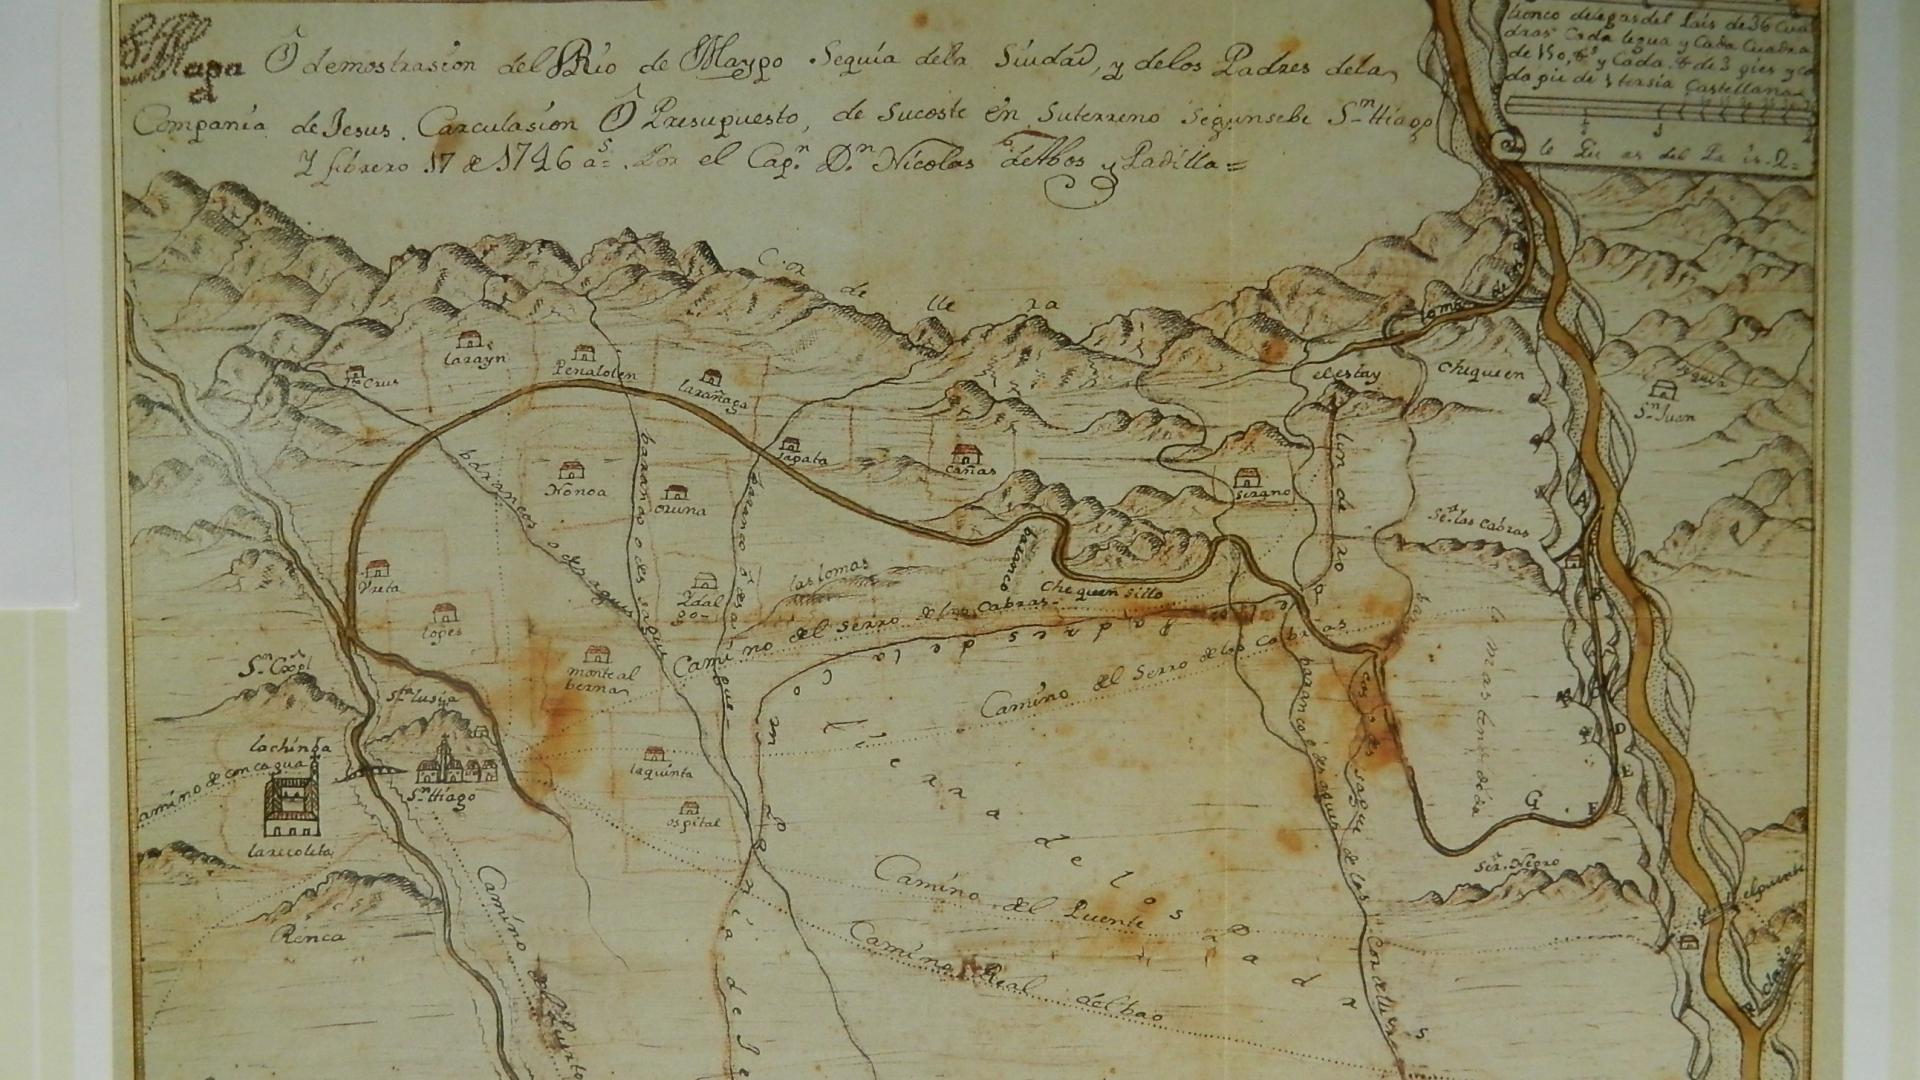 Mapa N. Abos y Padilla 1746 (Torres 1994 47)